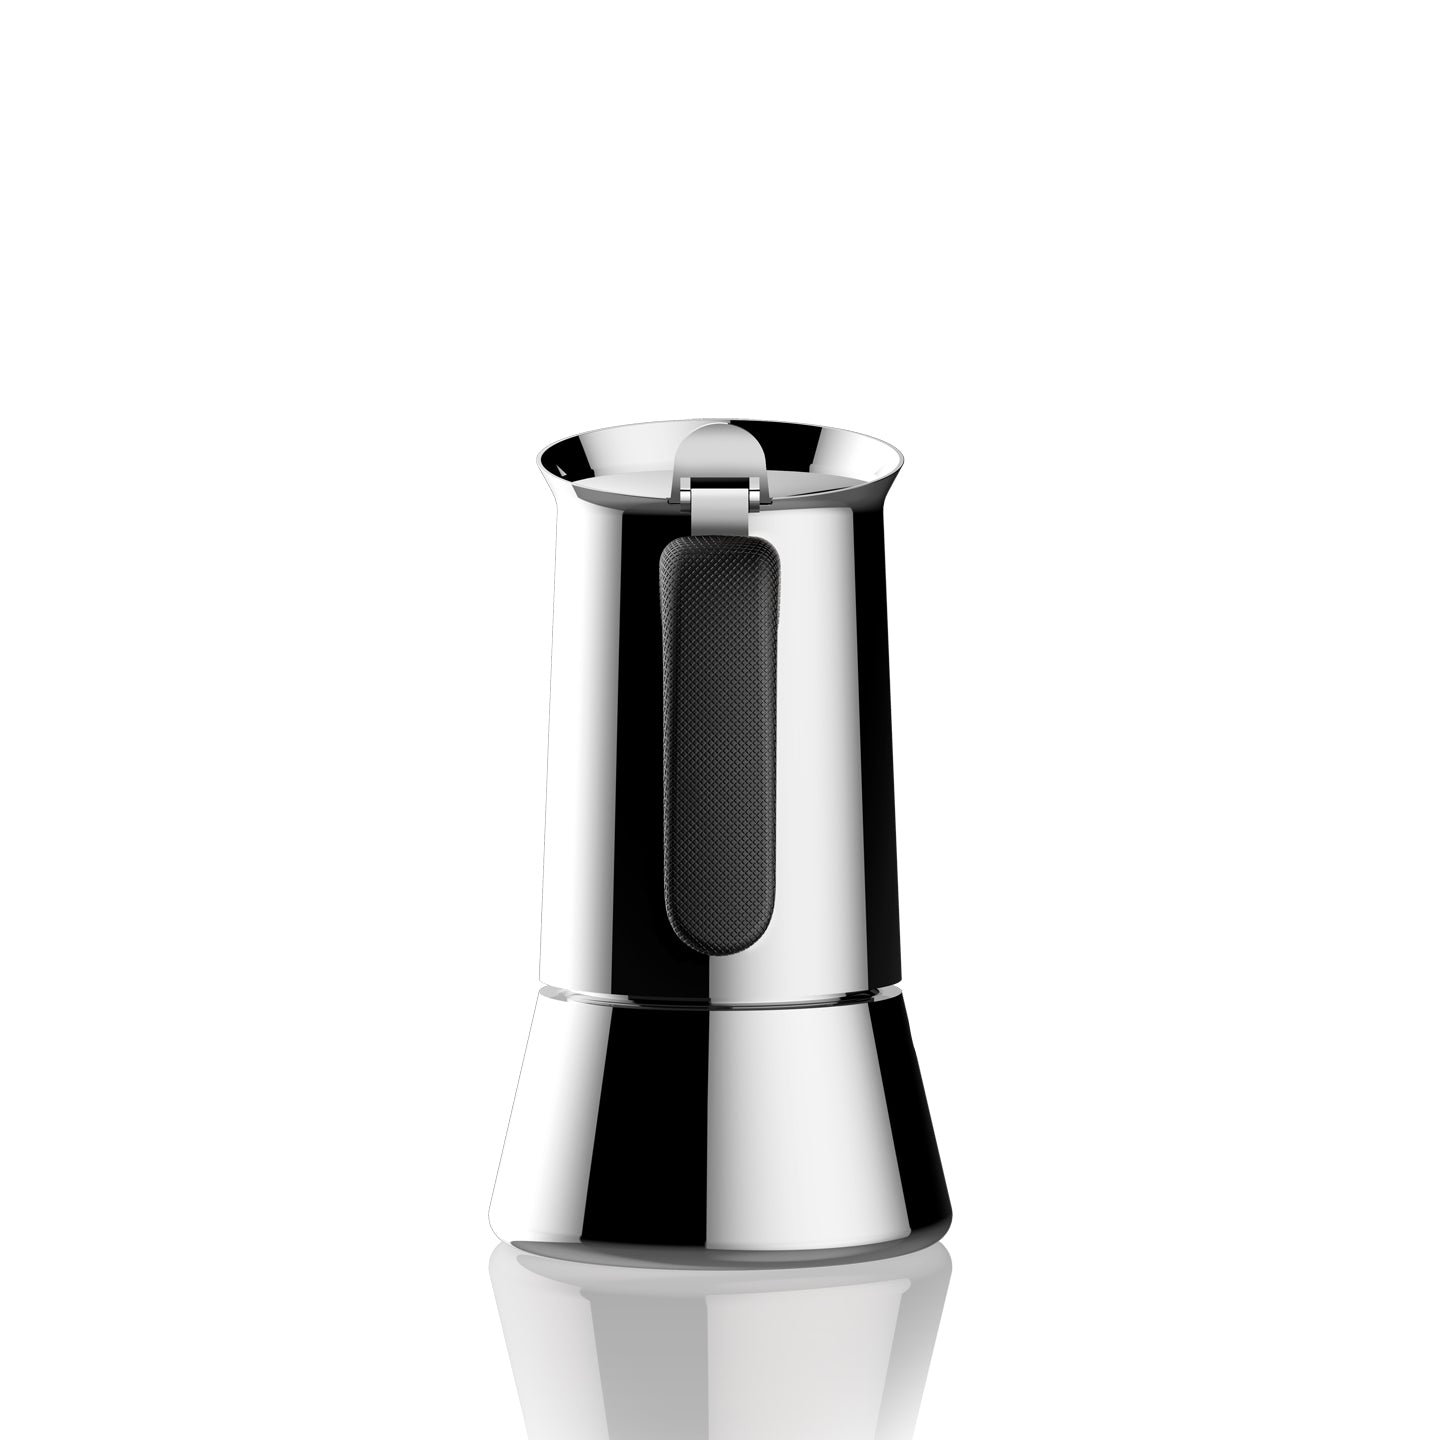 Bialetti NEW Venus Induction Espresso Pot